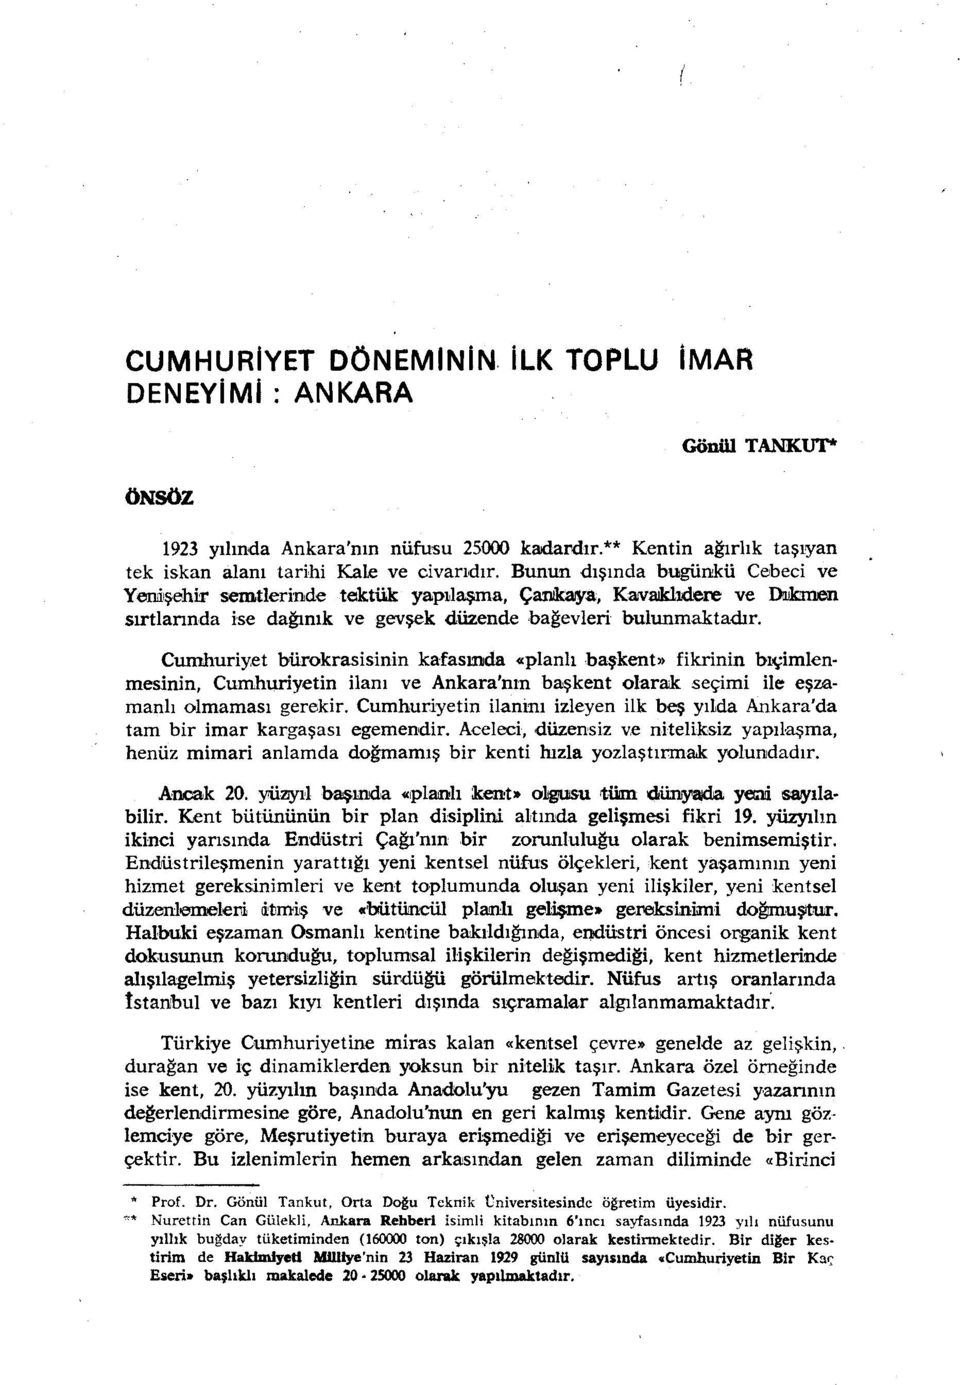 et bürokrasisinin kafasında «planlı başkent» fikrinin bıçimlenmesinin, Cumhuriyetin ilanı ve Ankara'nın başkent olarak seçimi ile eşzamanh olmaması gerekir.